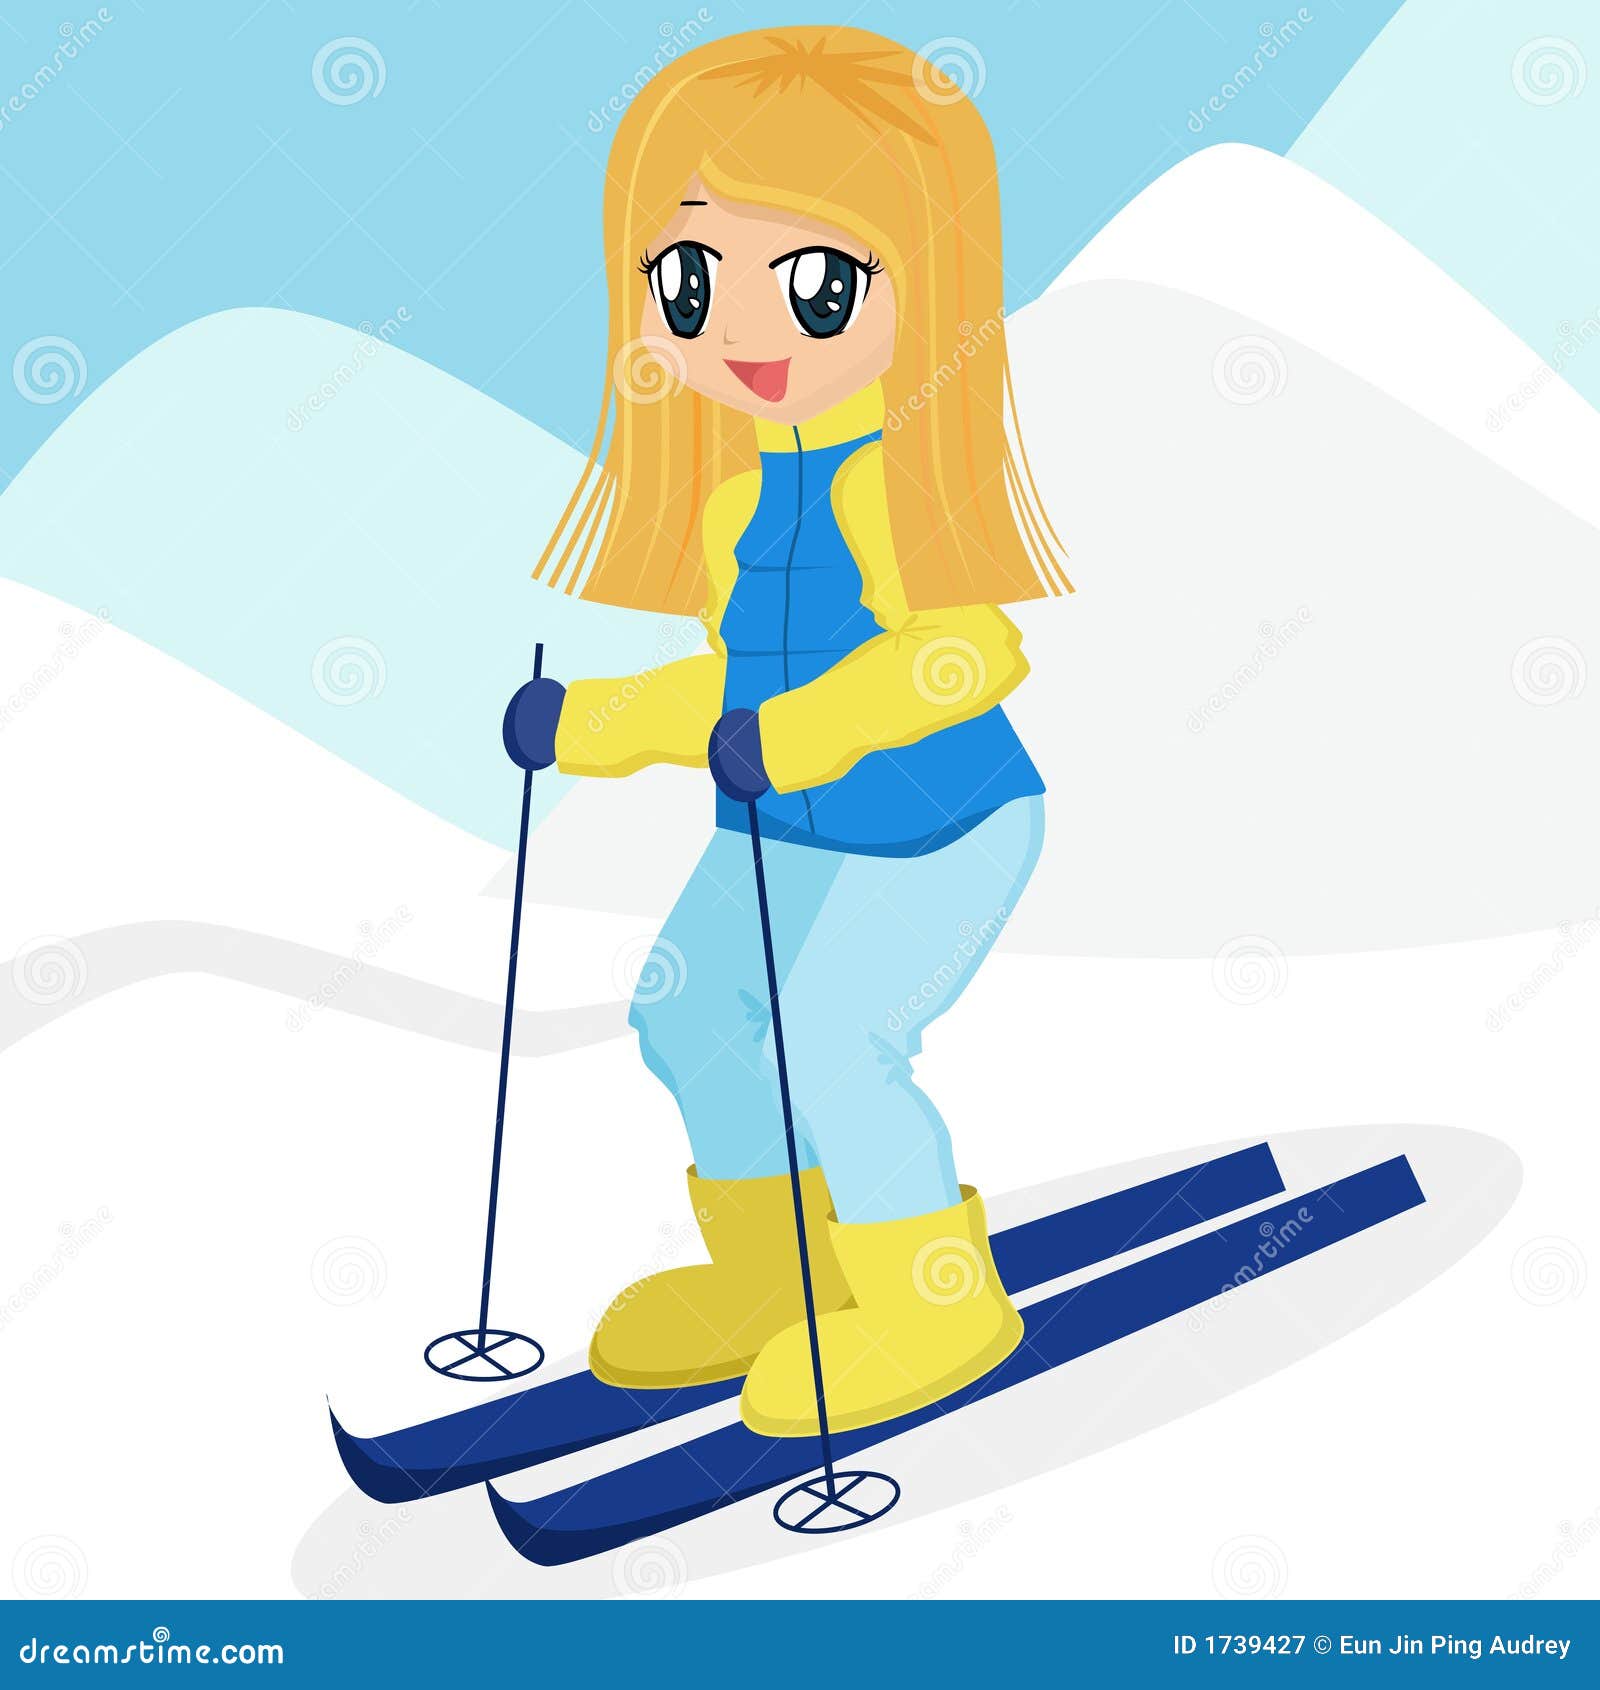 Рисование девочки на лыжах